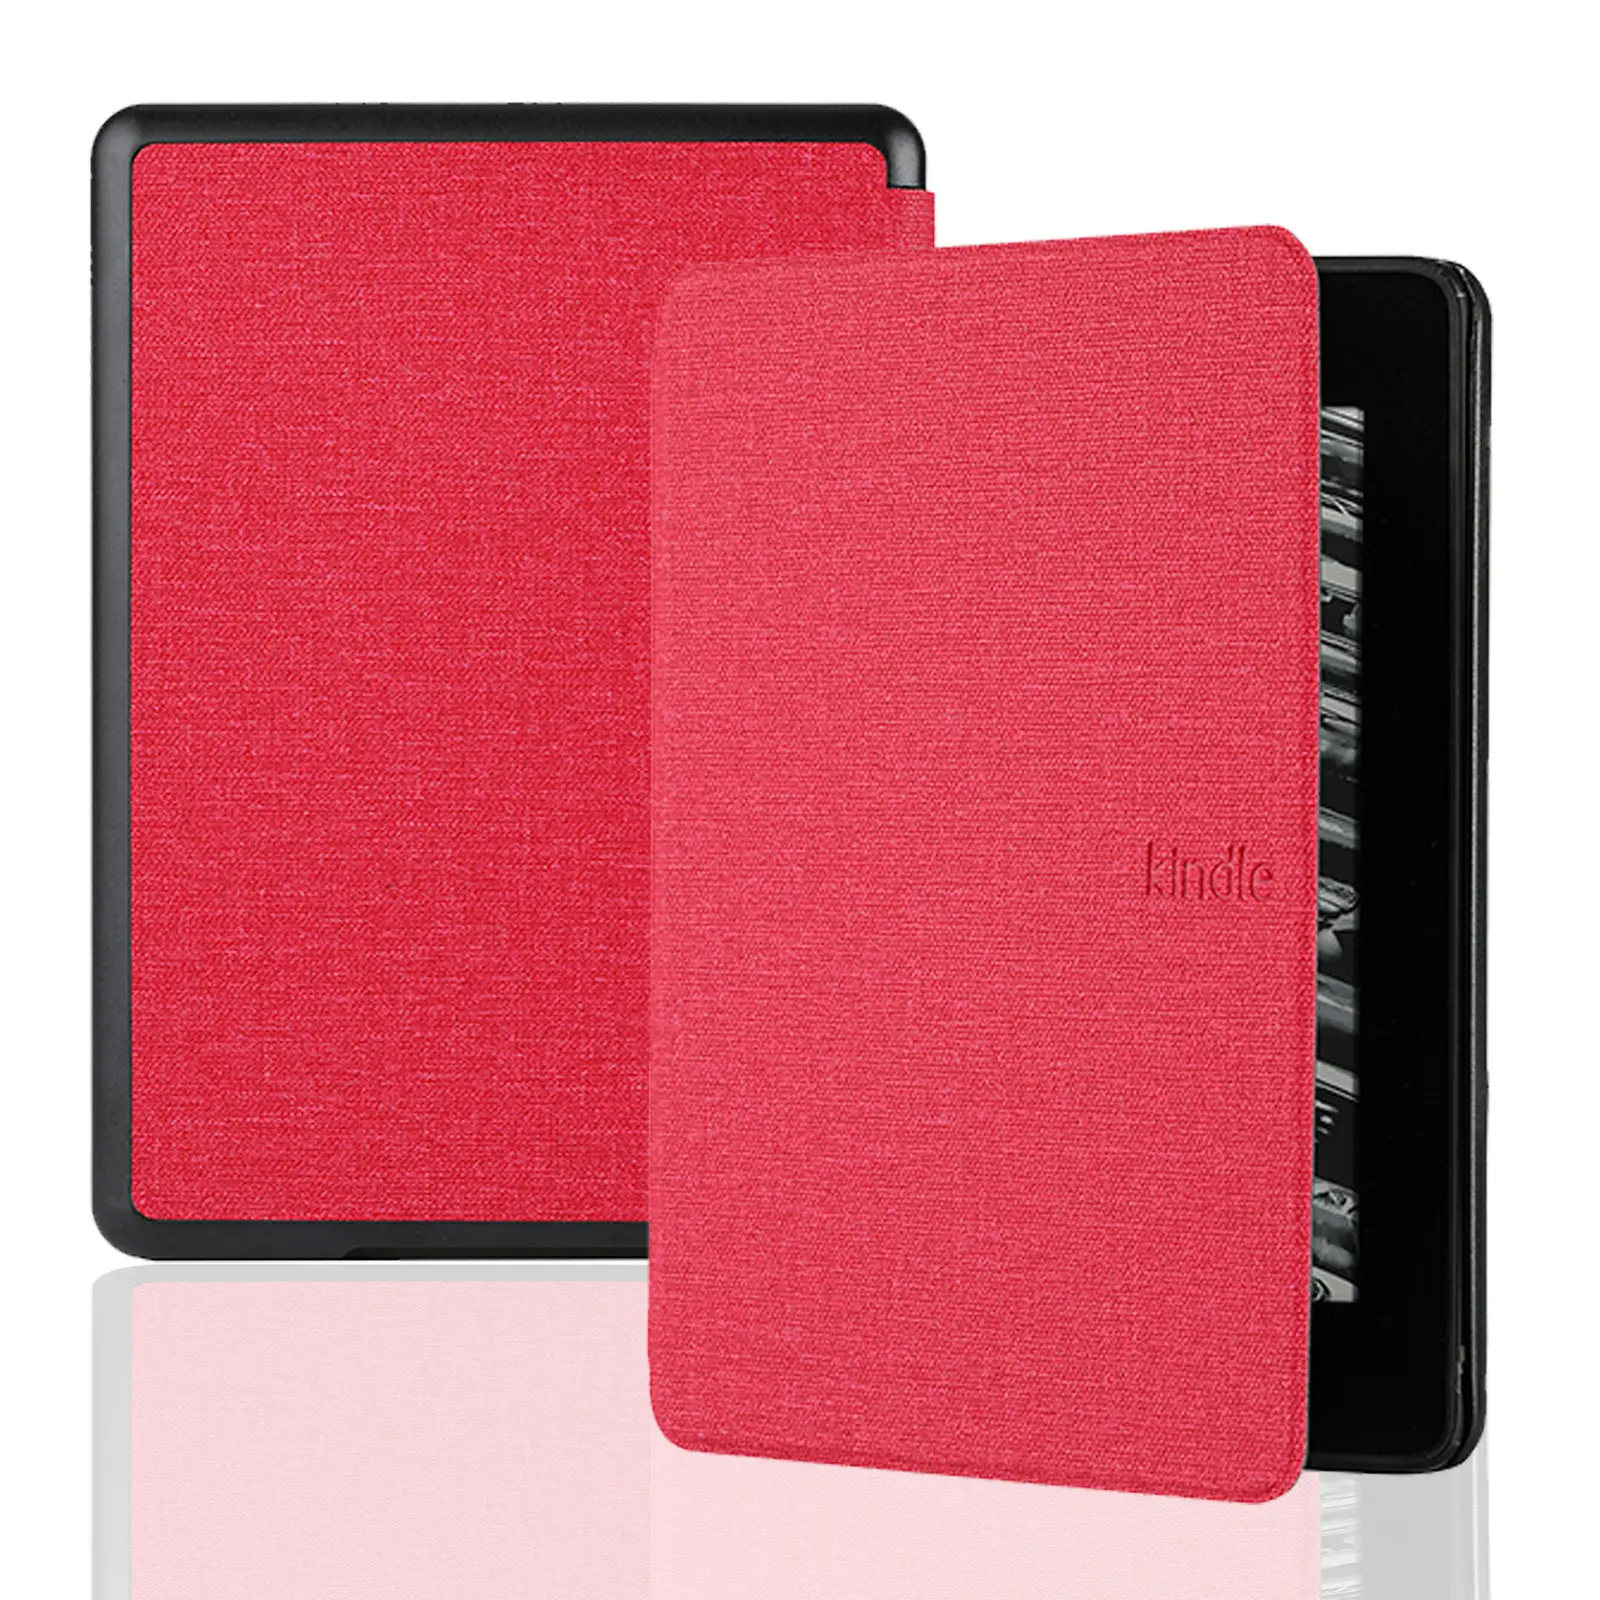 뜨거운 새로운 Kindle Paperwhite5 커버 케이스 태블릿 보호 PU 가죽 케이스